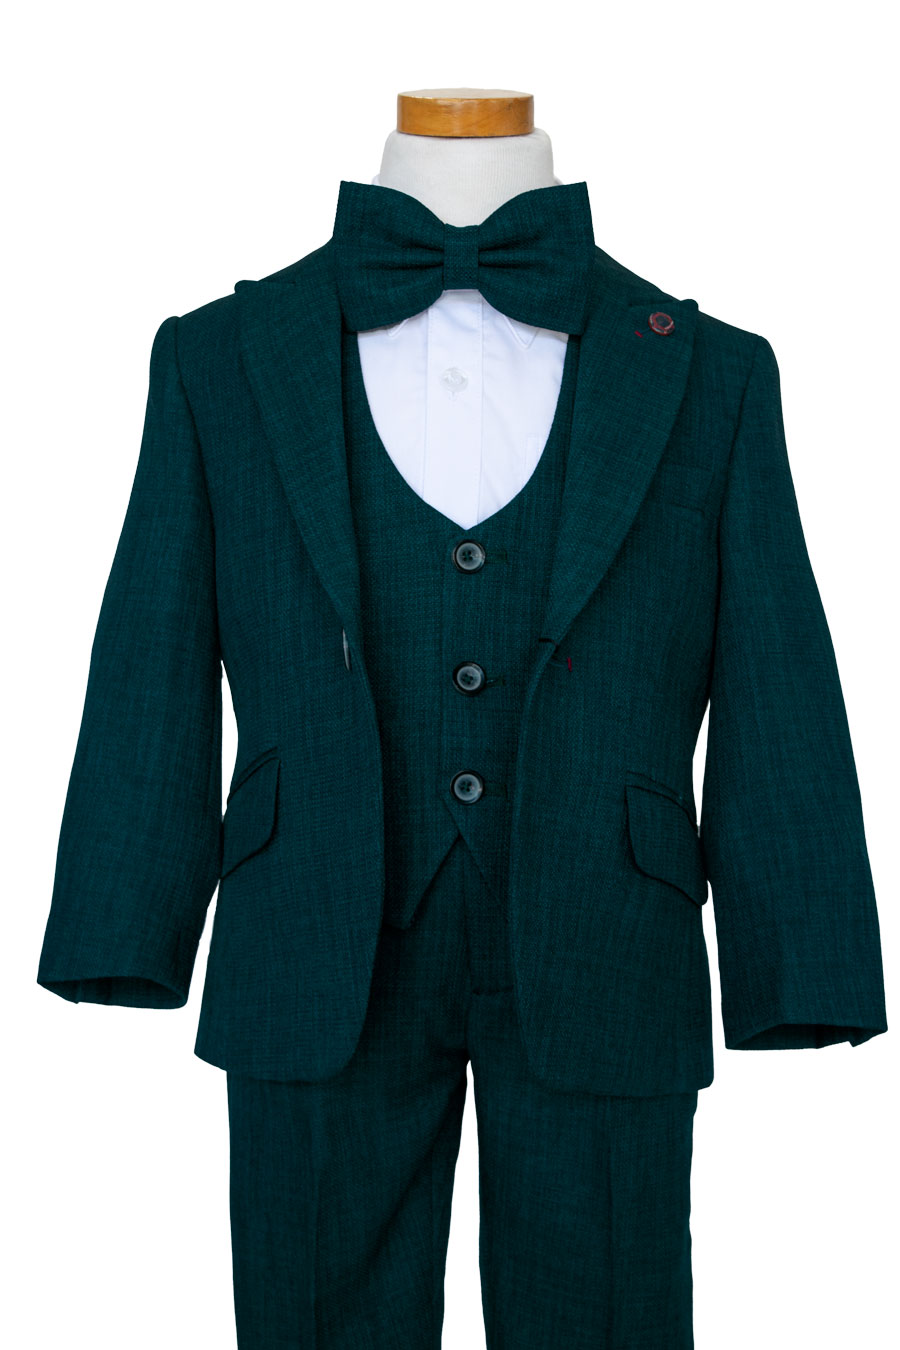 Buy Louis Philippe Blue Slim Fit Checks Four Piece Suit for Mens Online @  Tata CLiQ